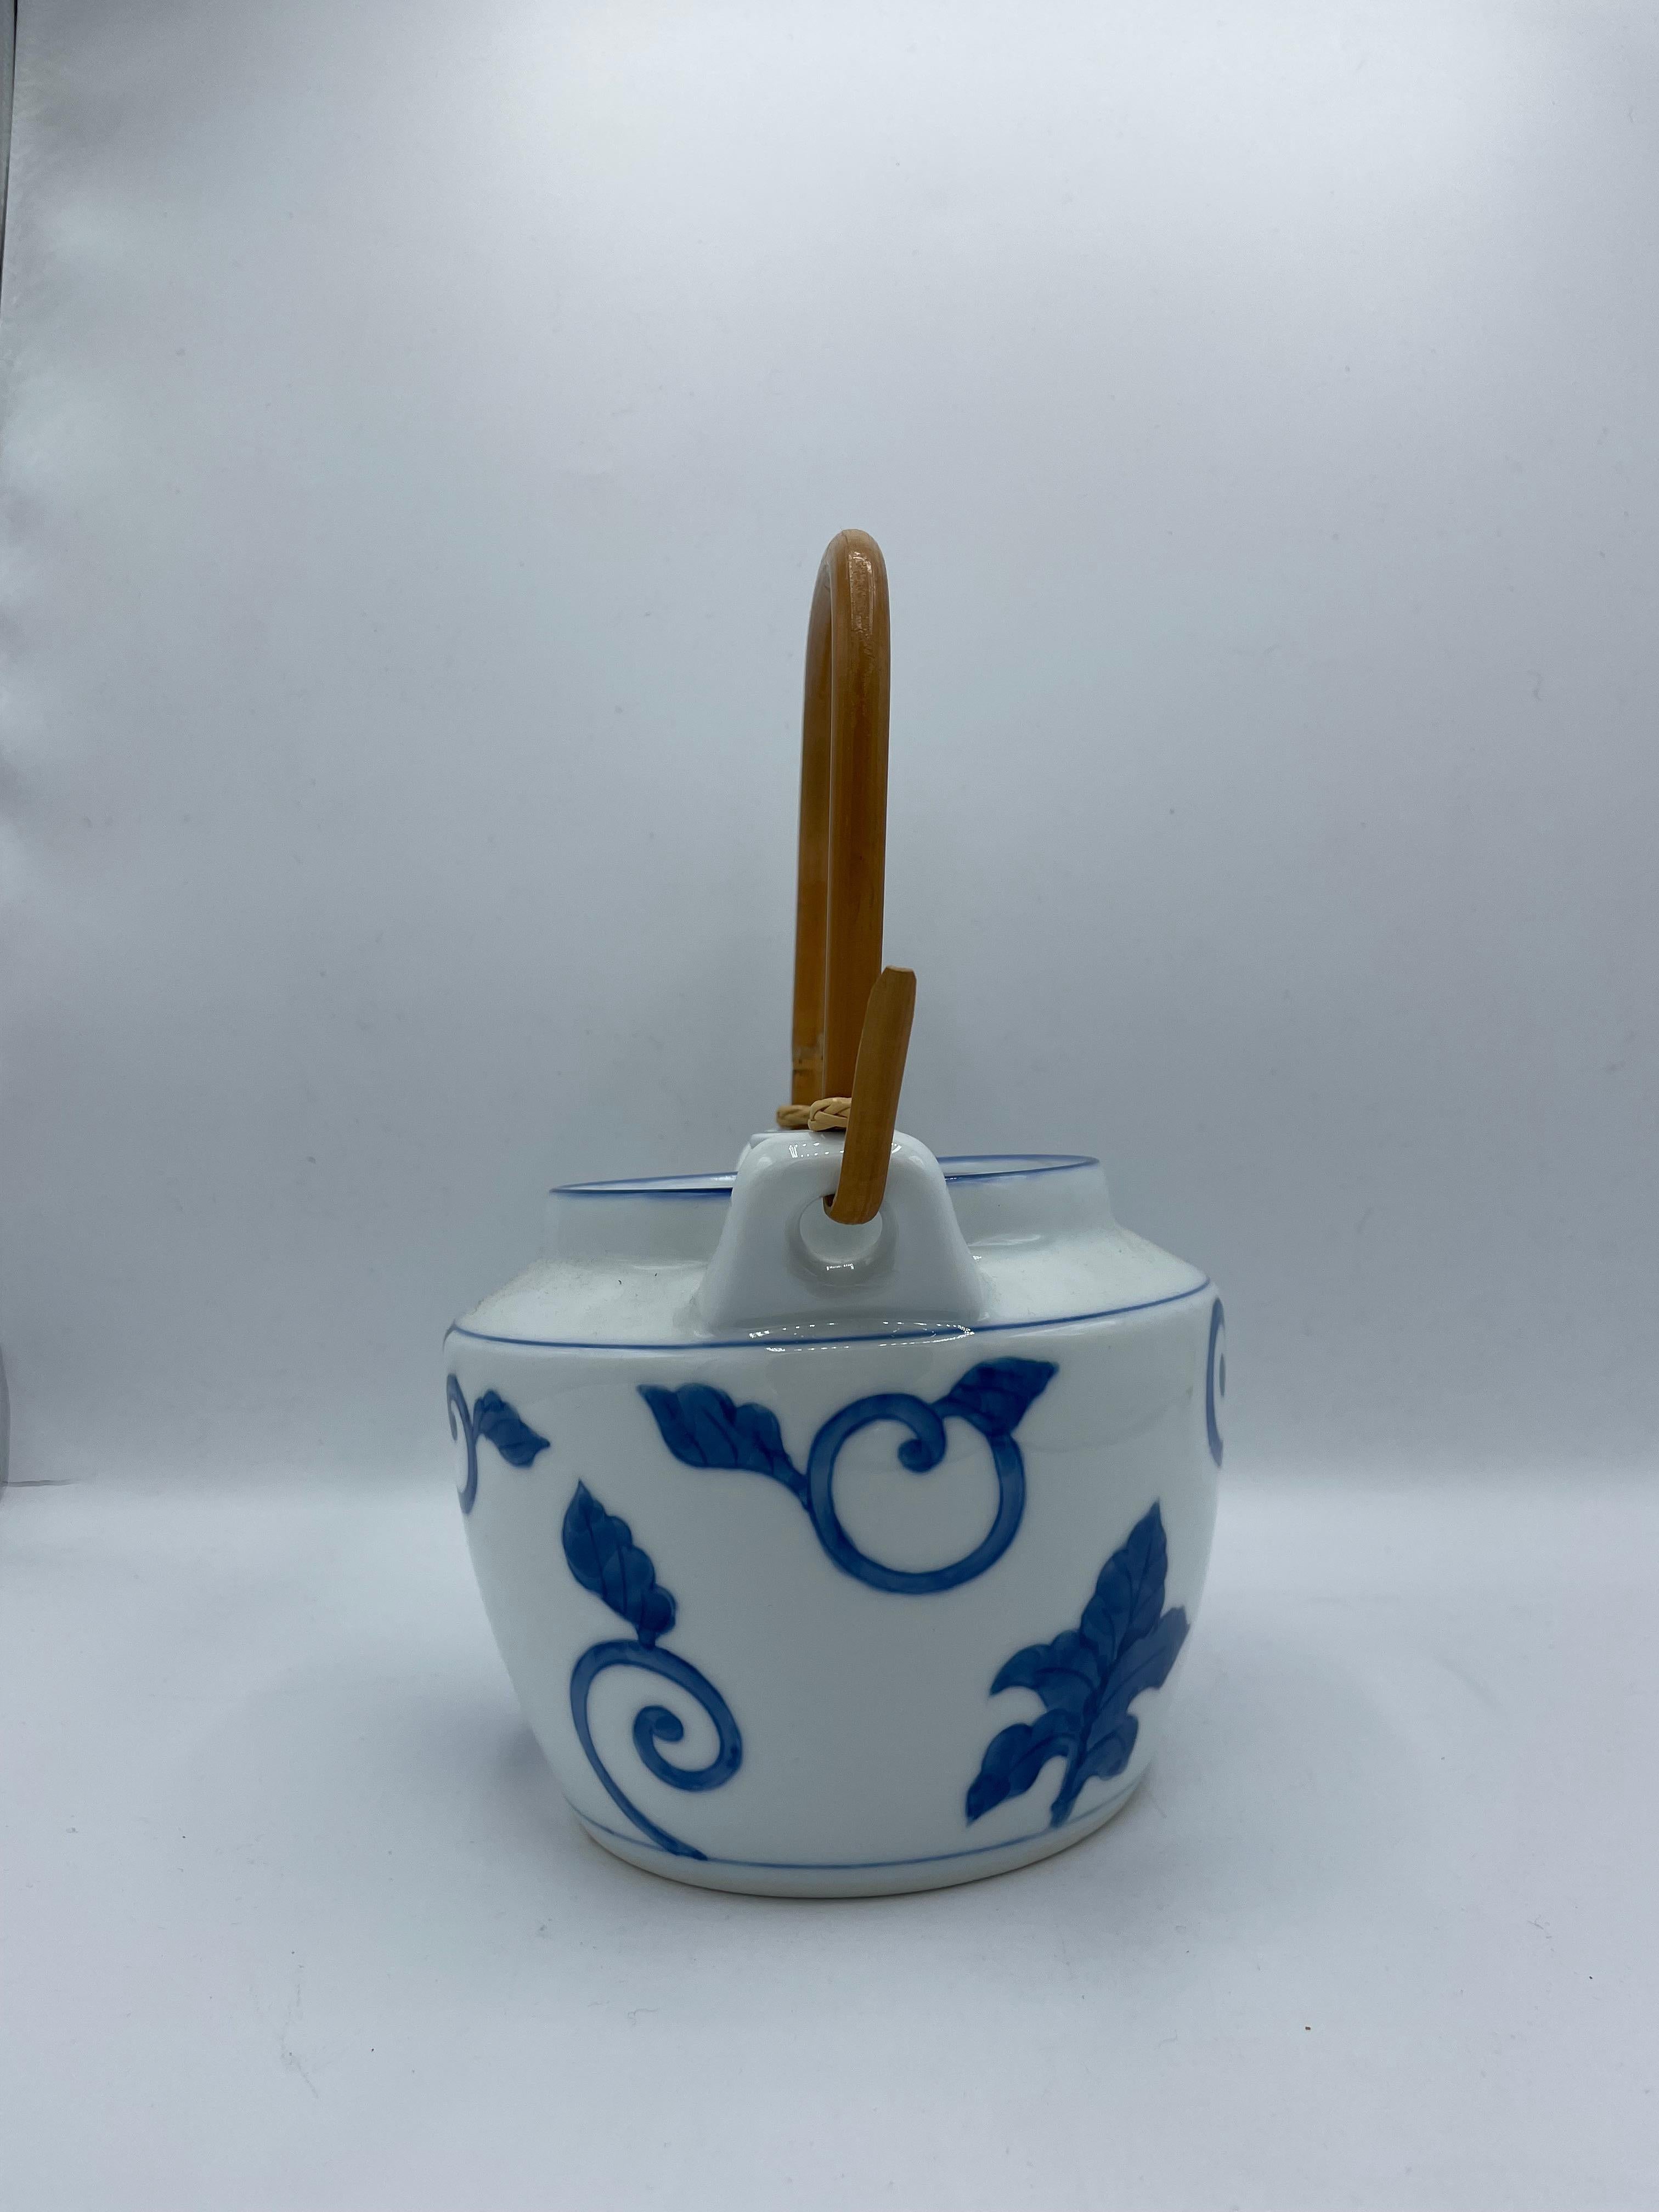 Dies ist eine Teekanne, die in Japan um die Showa-Ära in den 1960er Jahren hergestellt wurde.
Sie ist aus Porzellan gefertigt und das Handgelenk besteht aus Holz und Bambus.

Abmessungen (cm):
20,5 x 15 x H 25
Länge des Handgelenks  12 cm